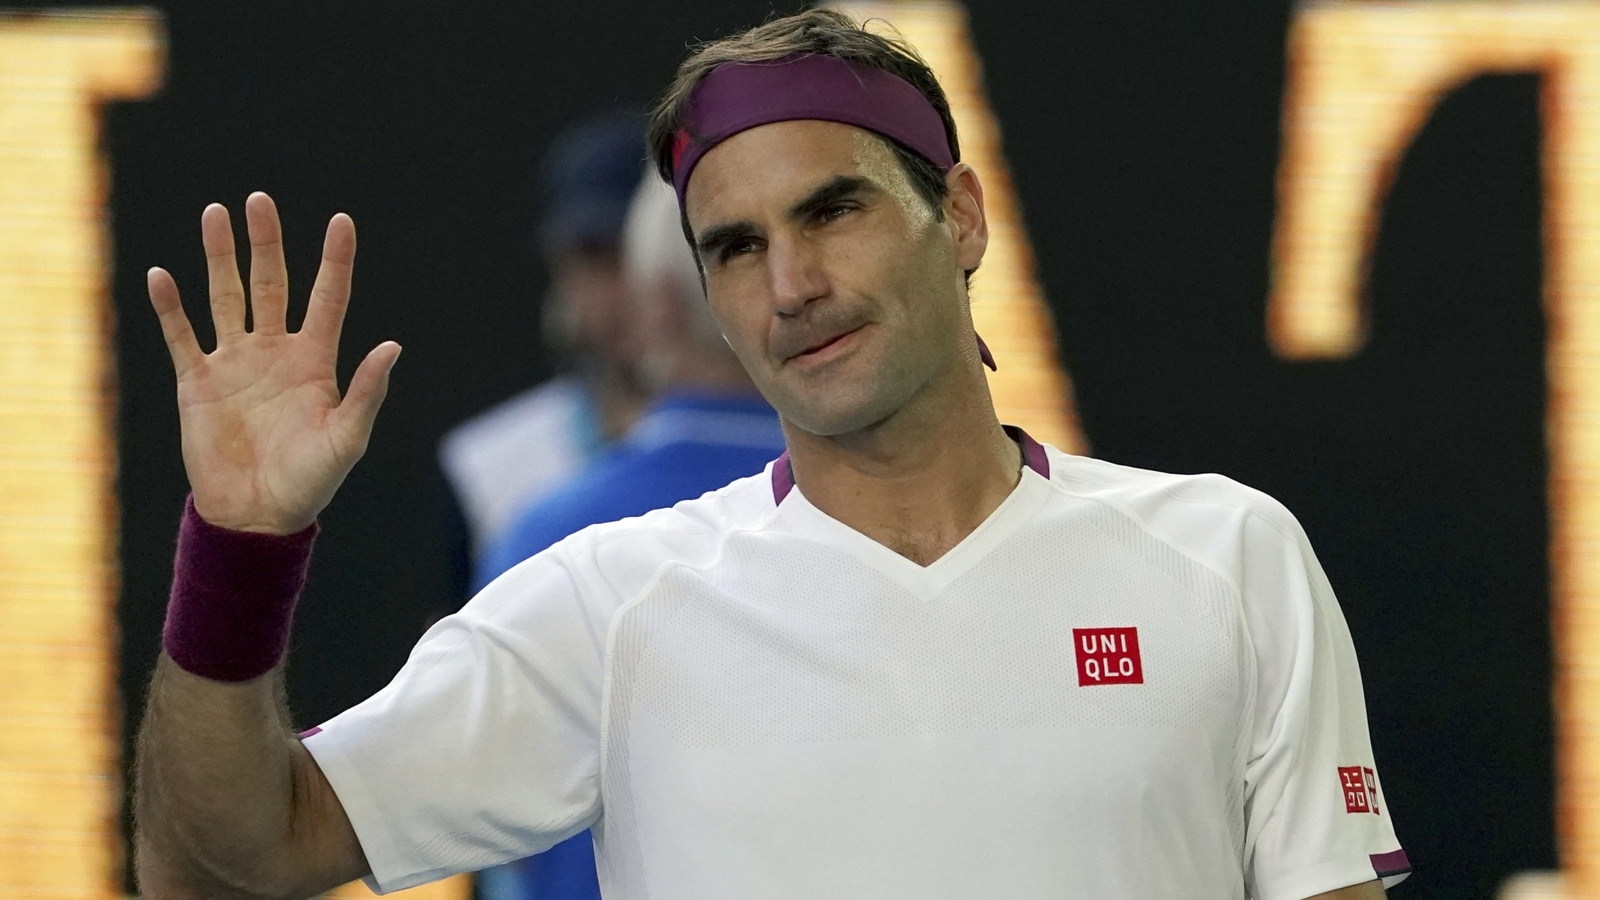 ‘Celebration now too short for me…’: Roger Federer postpones farewell party at Basel ATP event